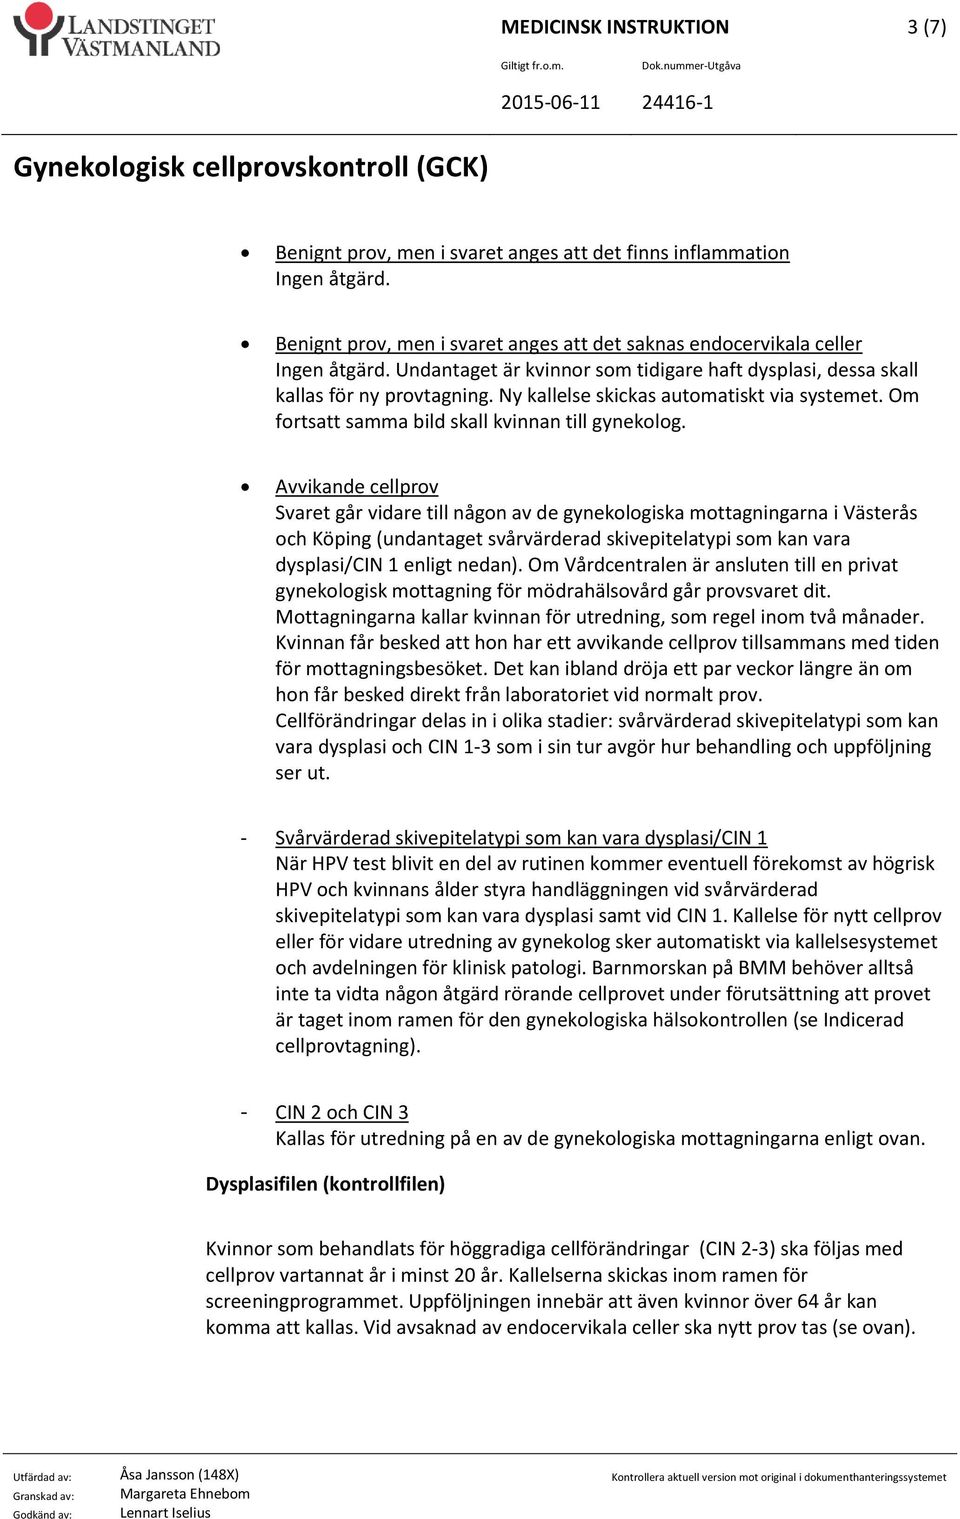 Avvikande cellprov Svaret går vidare till någon av de gynekologiska mottagningarna i Västerås och Köping (undantaget svårvärderad skivepitelatypi som kan vara dysplasi/cin 1 enligt nedan).